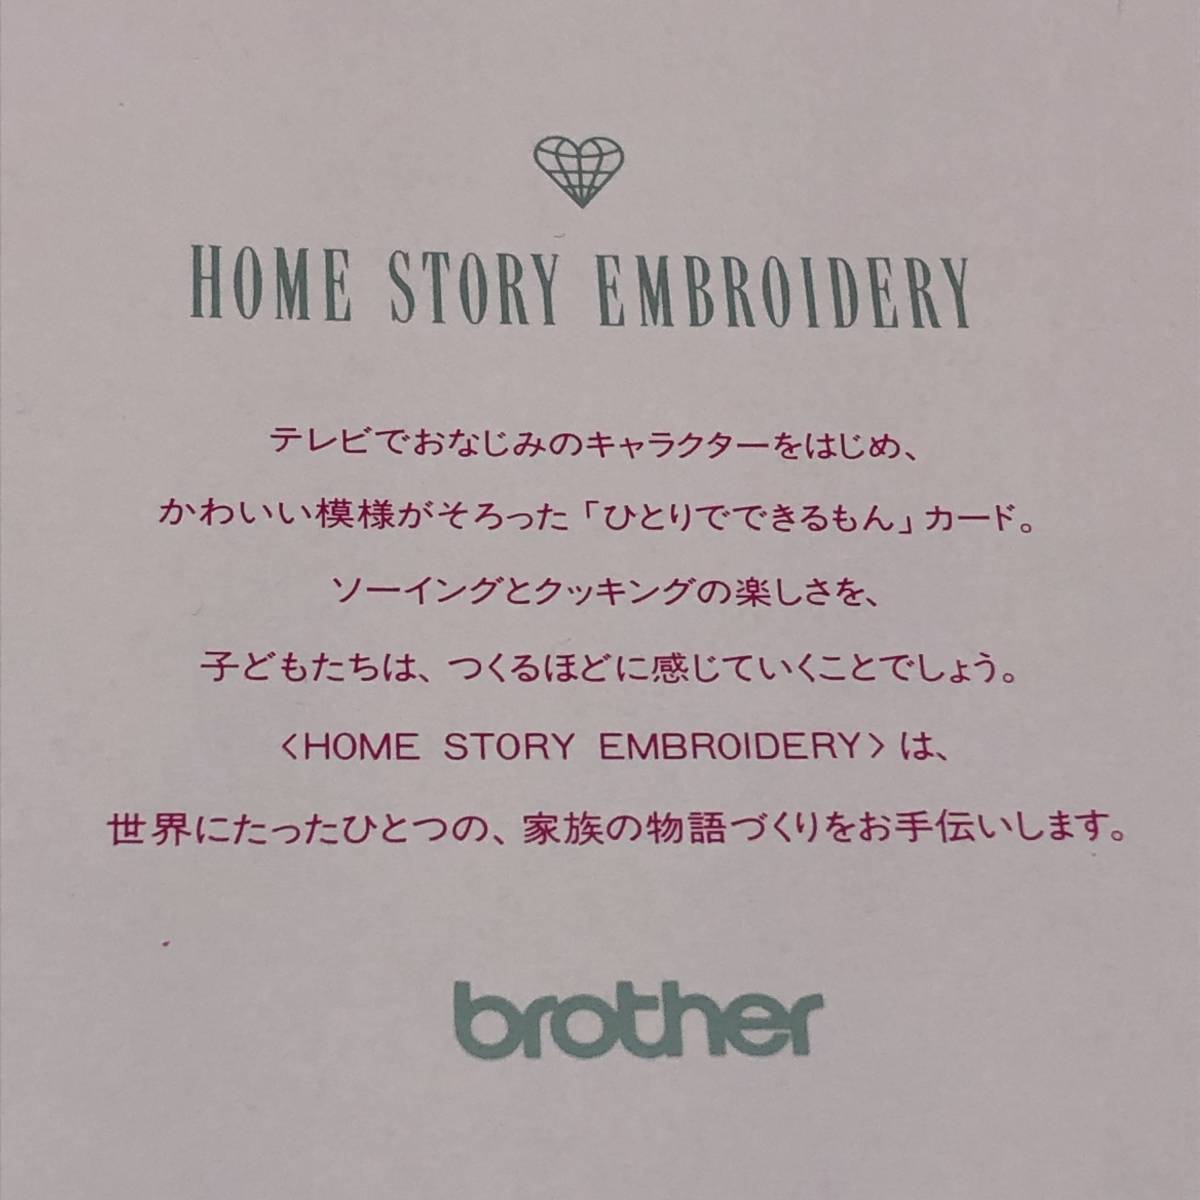 brother 刺繍カード HOME STORY EMBROIDERY ひとりでできるもん X57996-001 まいちゃん NHK キャラクター ブラザー ミシン 23011901i2_画像3